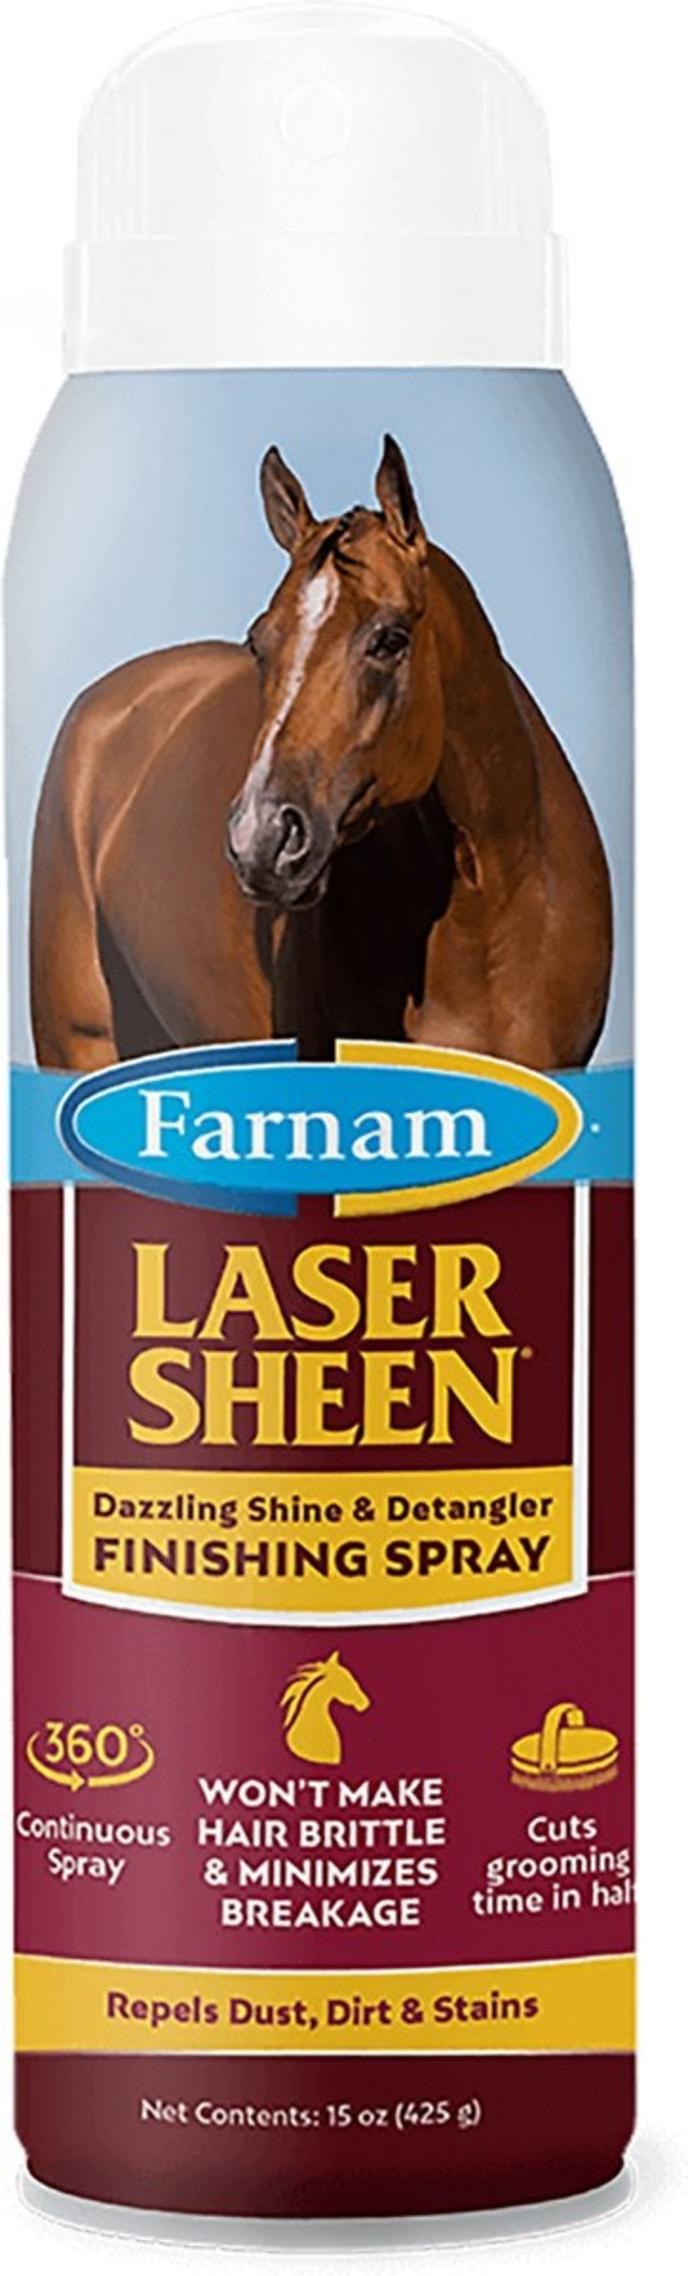 Farnam Laser Sheen Dazzling Shine & Detangler Finishing Spray